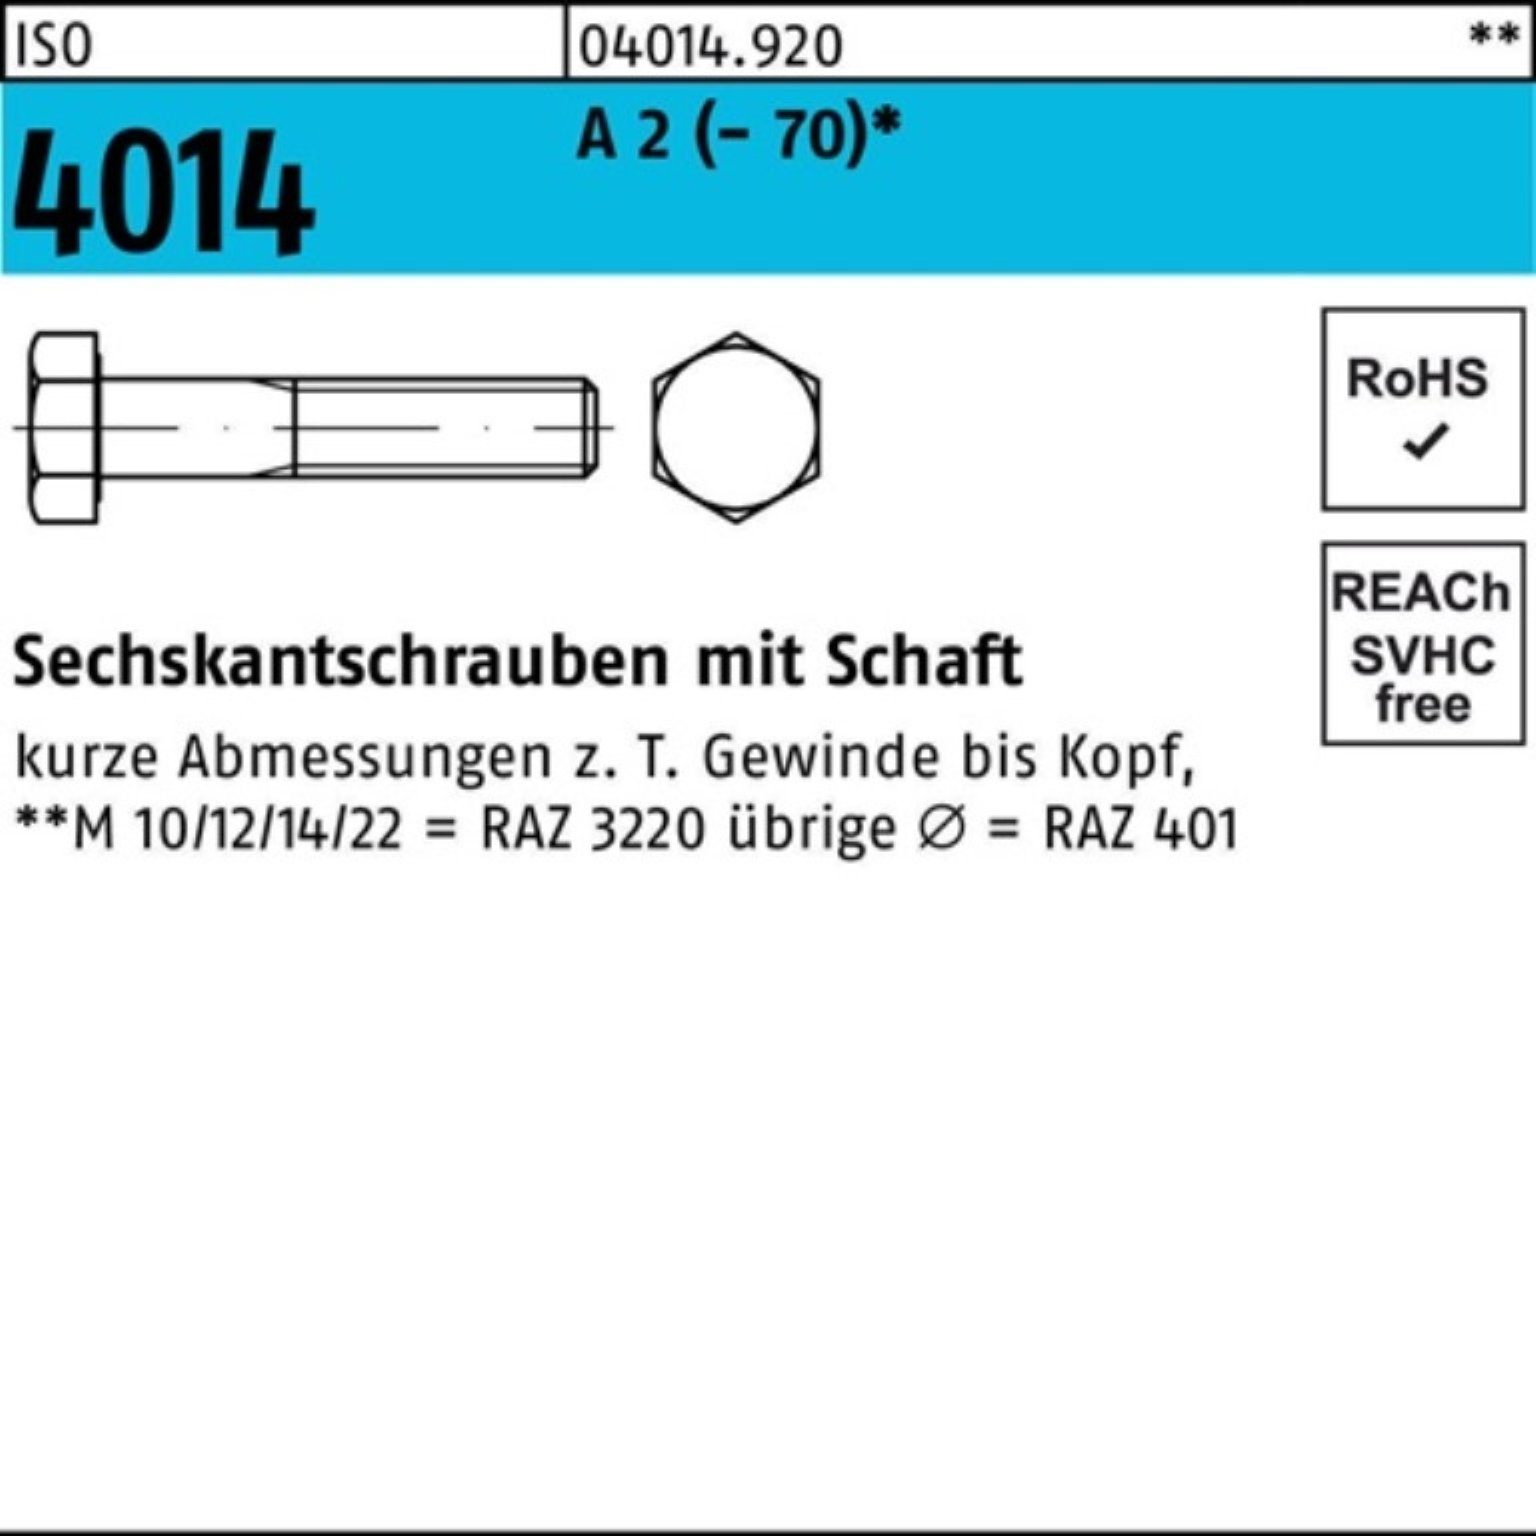 (70) Schaft Sechskantschraube M12x Bufab Sechskantschraube 4014 100er 1 210 St 2 ISO Pack A